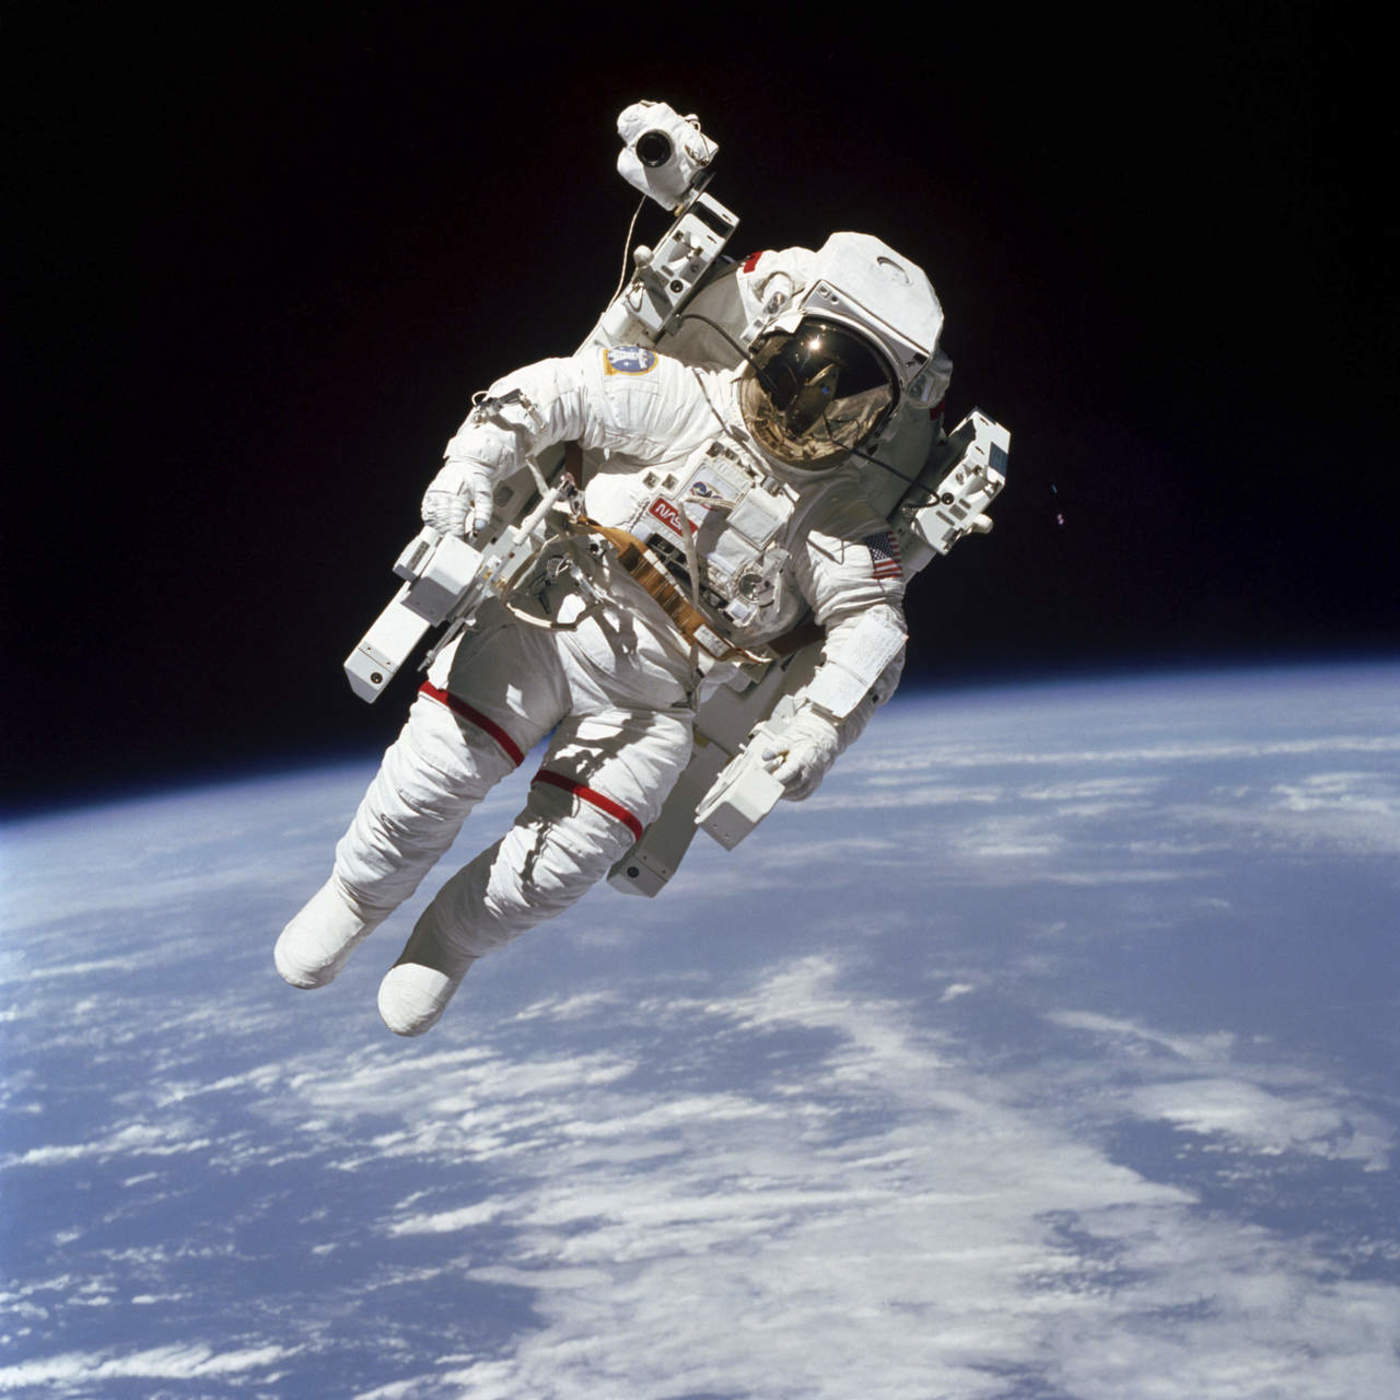 Primera caminata en el espacio cumplió 35 años